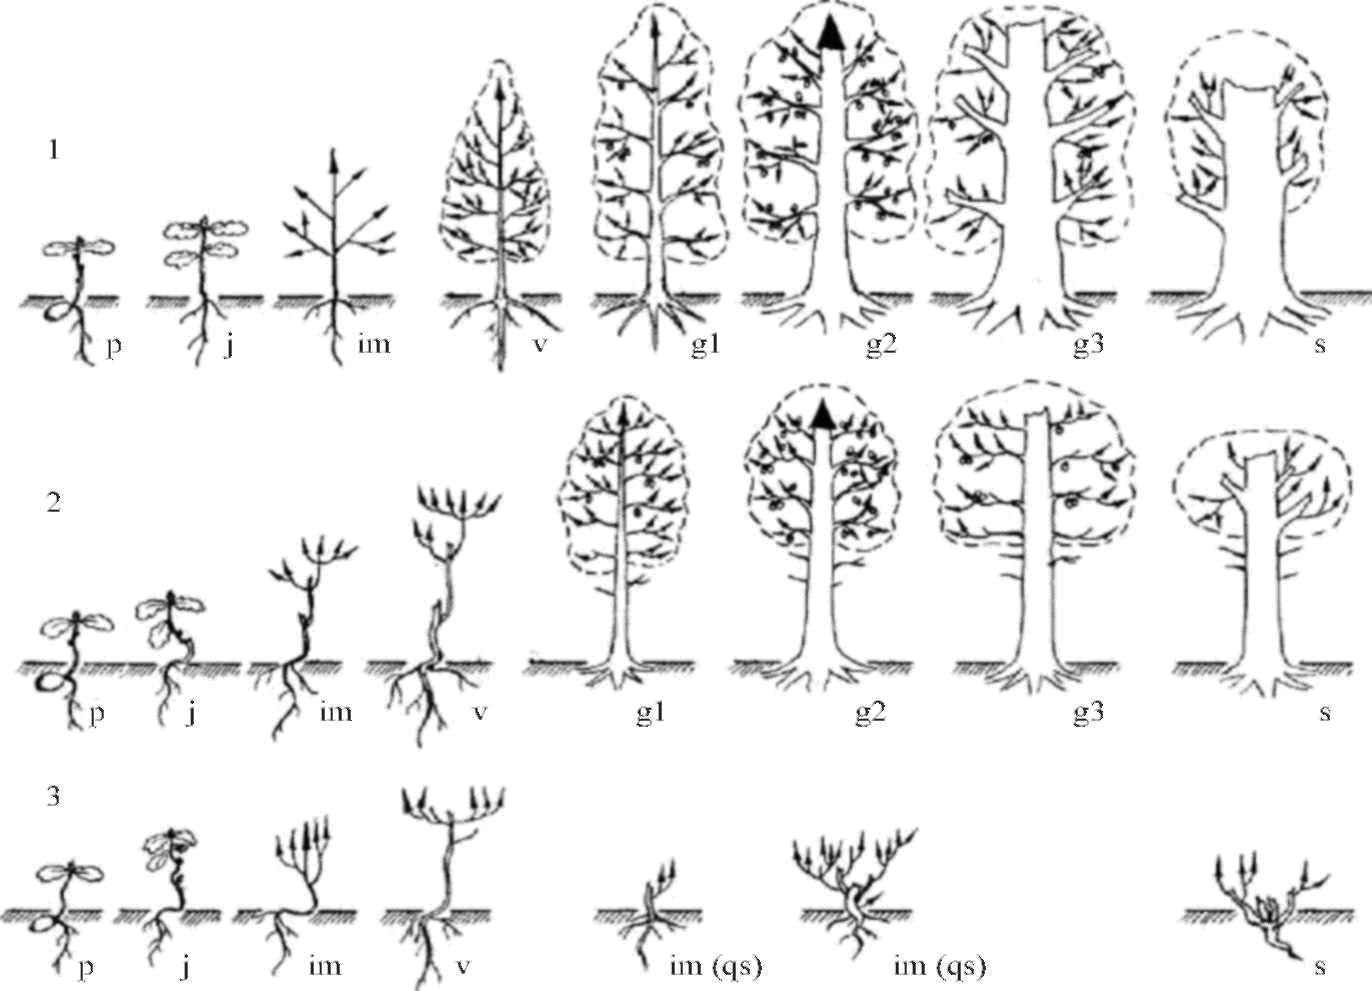 При делении жизненного цикла овощных растений онтогенез. Онтогенез древесных растений. Онтогенез дуба. Лиственница онтогенез. Фенологическая фаза у хвойных деревьев.